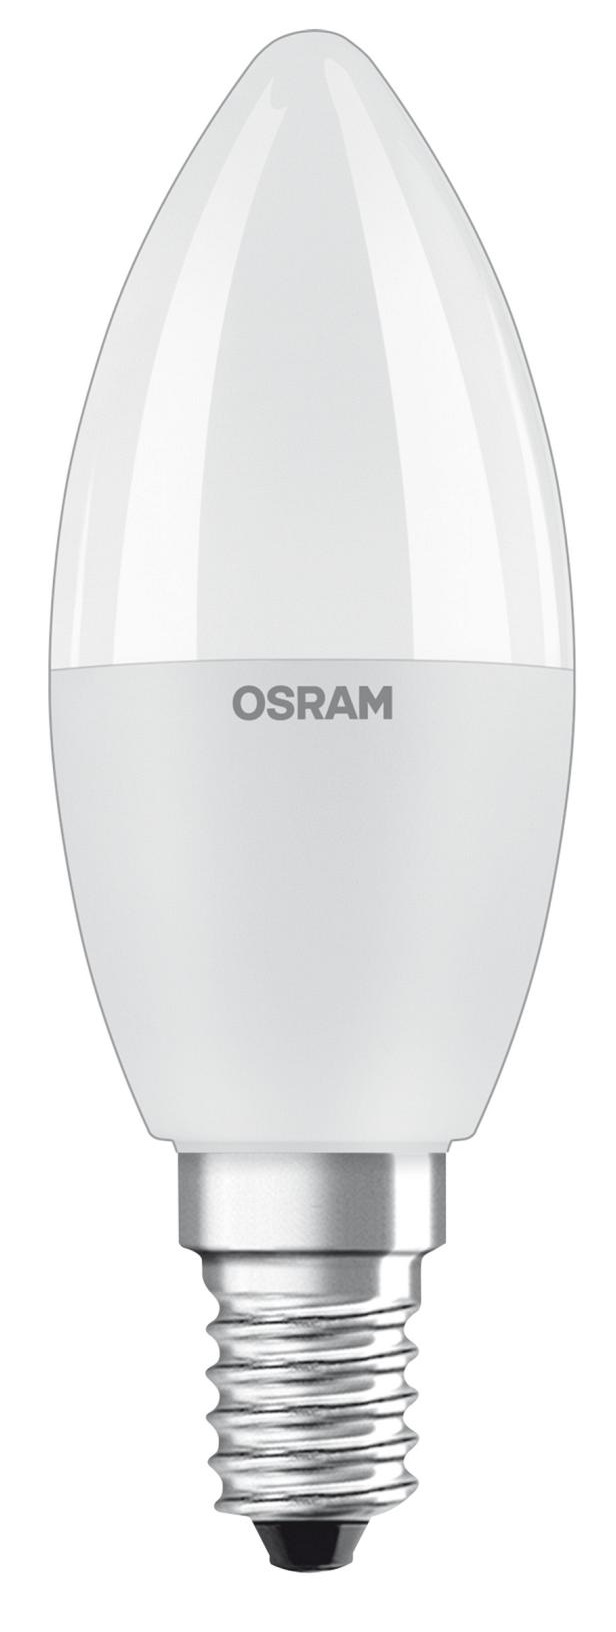 Светодиодная лампа Osram с цоколем E14 Osram 4058075430853